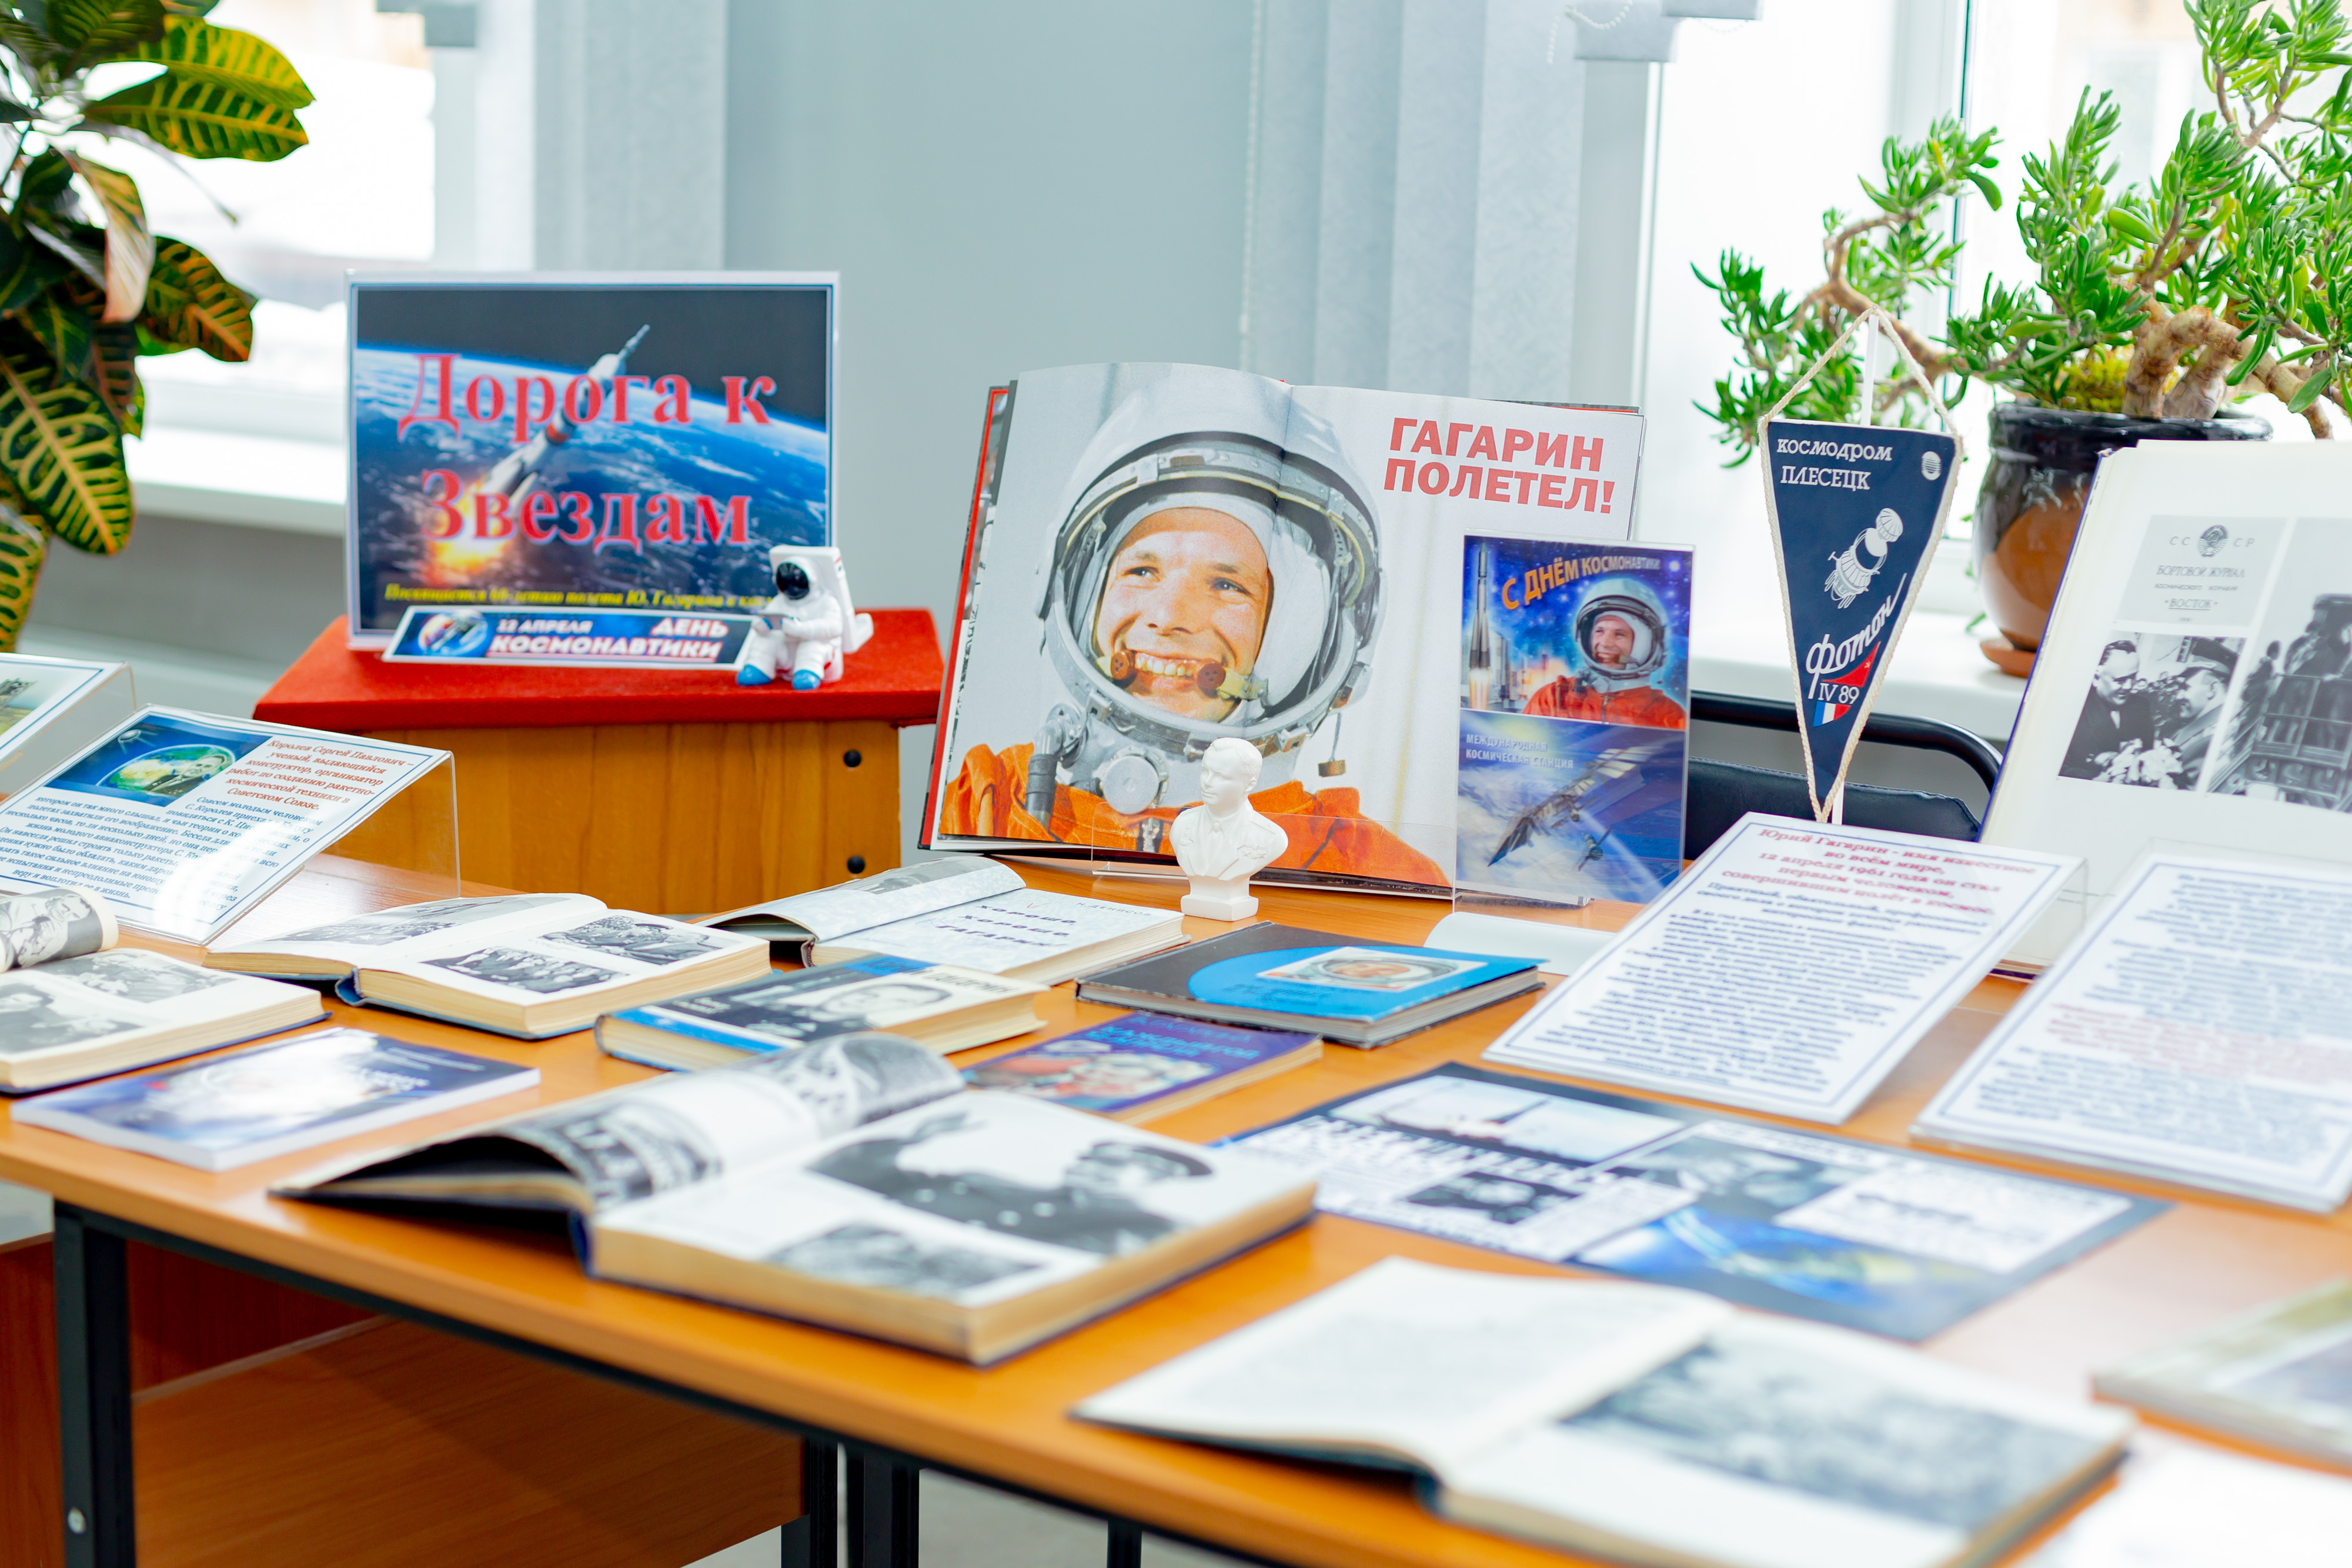 12 апреля день космонавтики в библиотеке